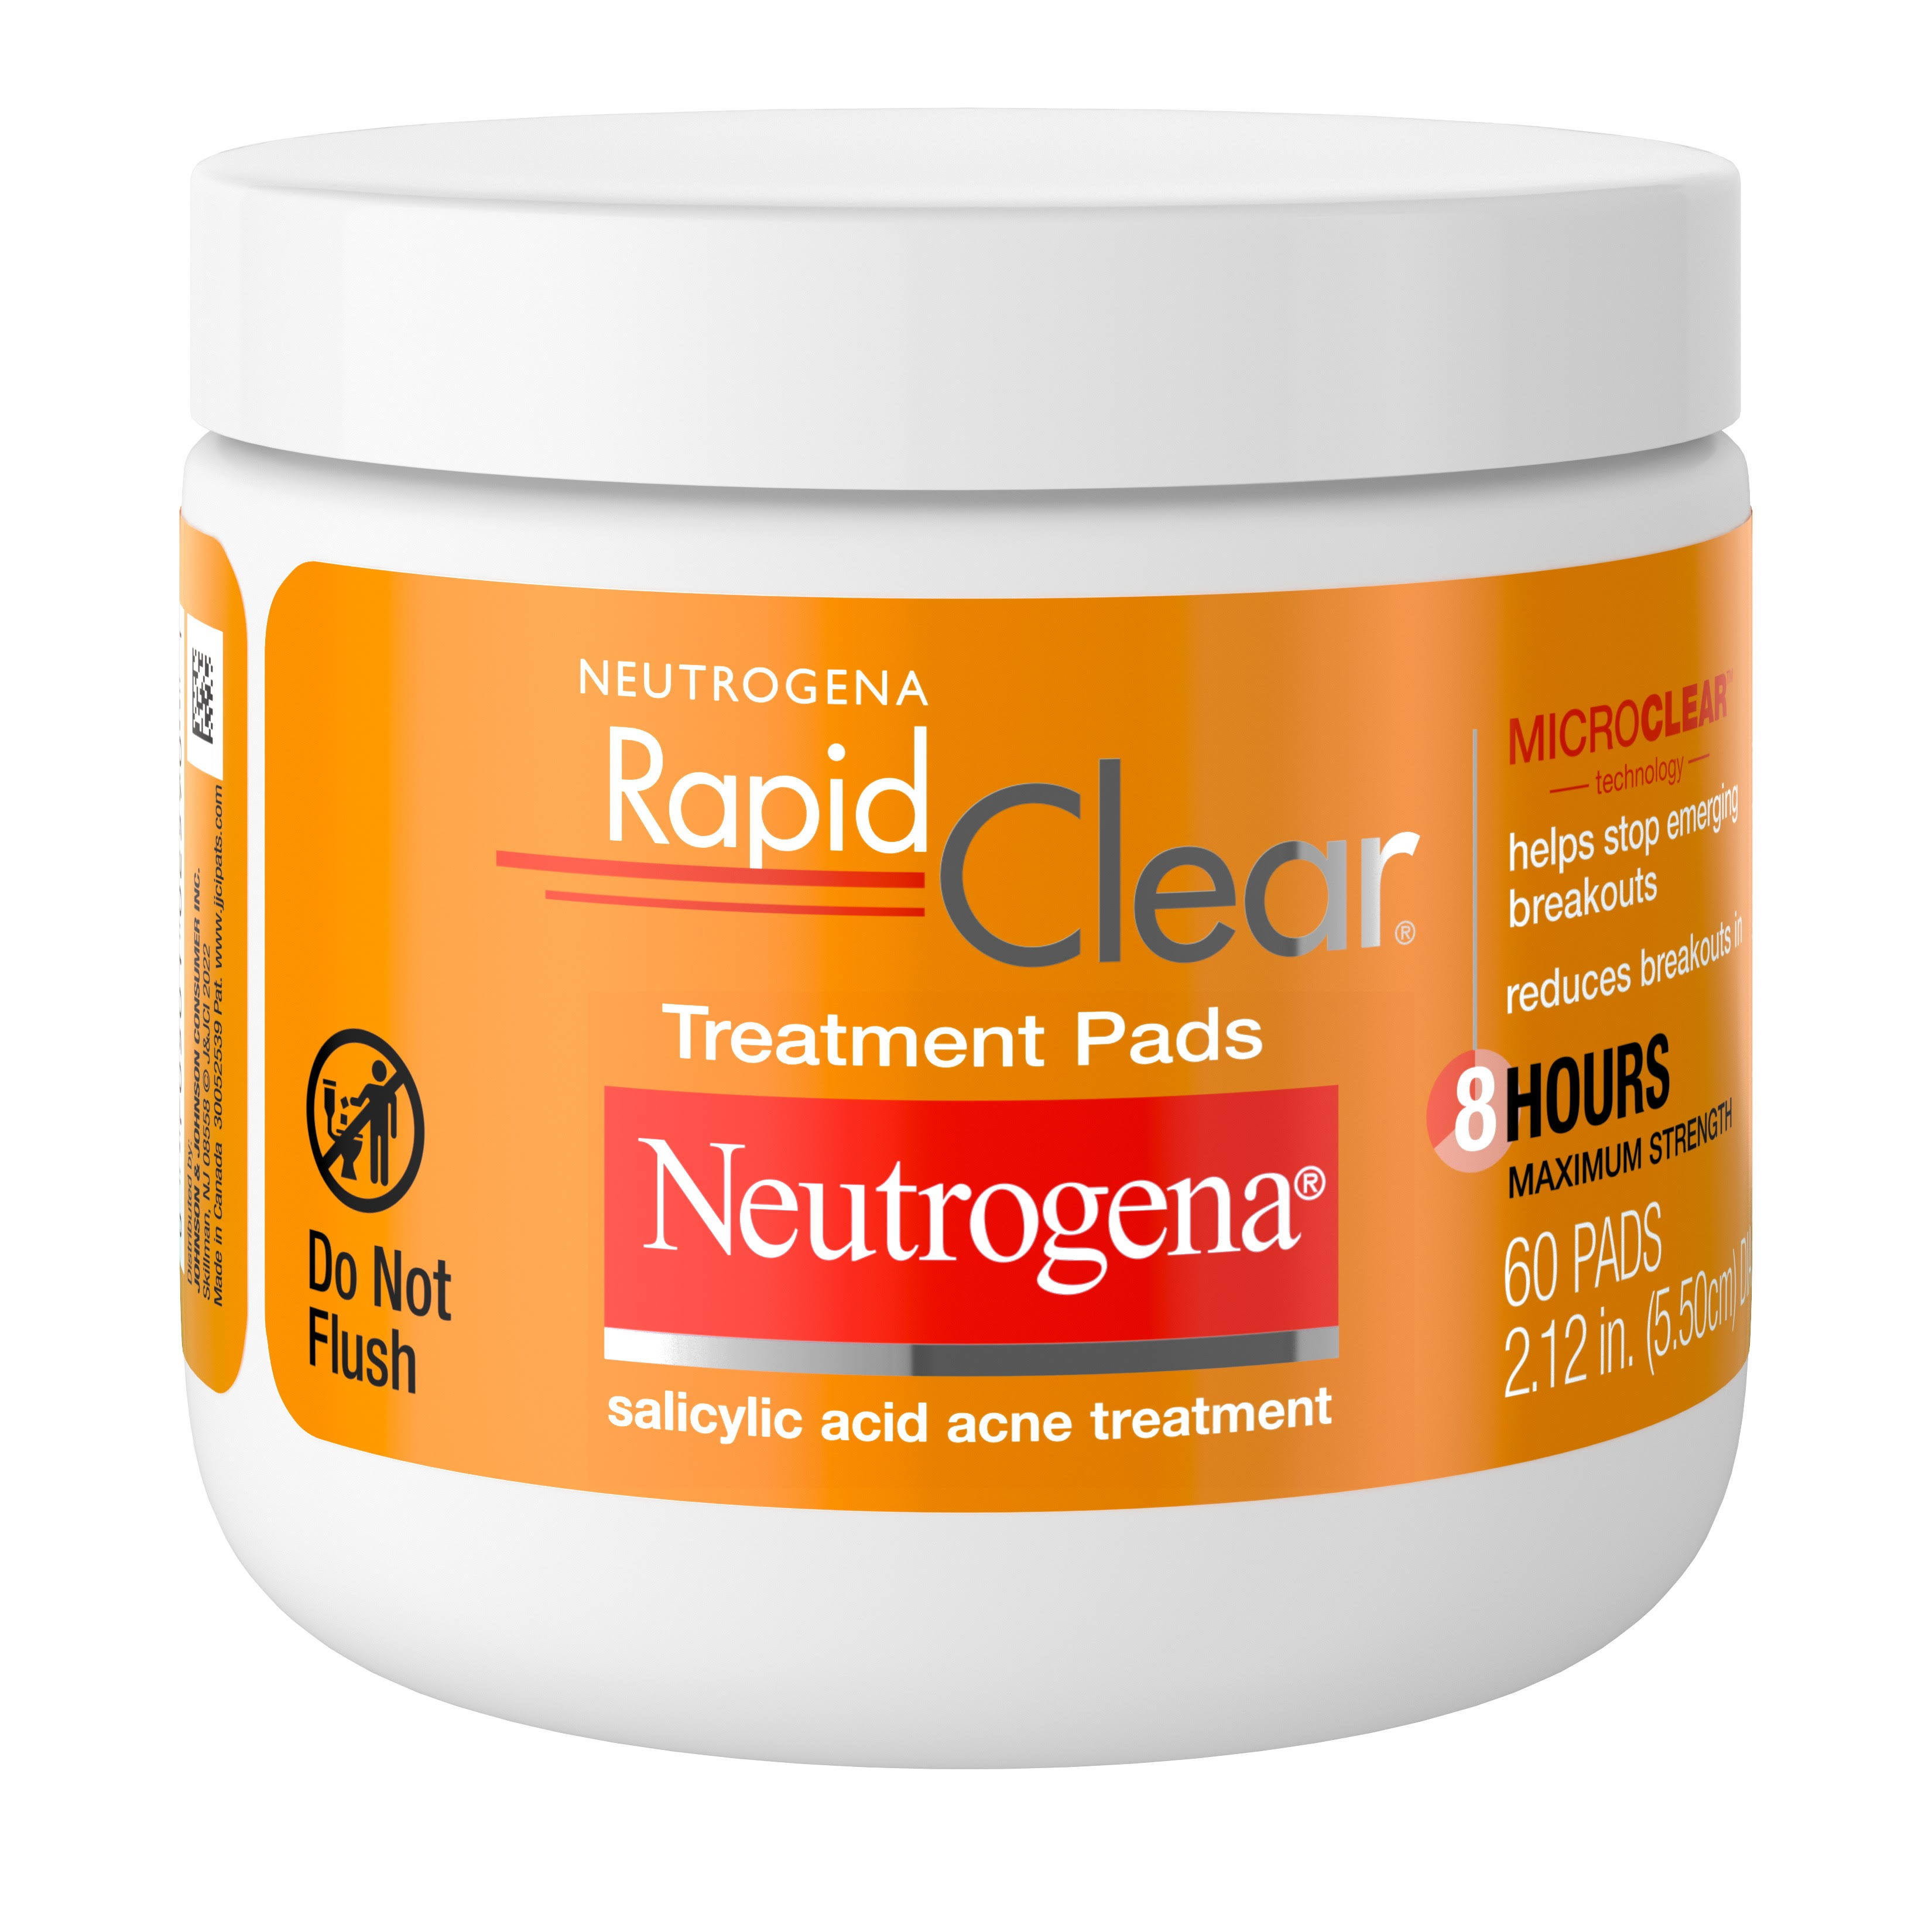 Neutrogena Rapid Clear Treatment Pads - x60